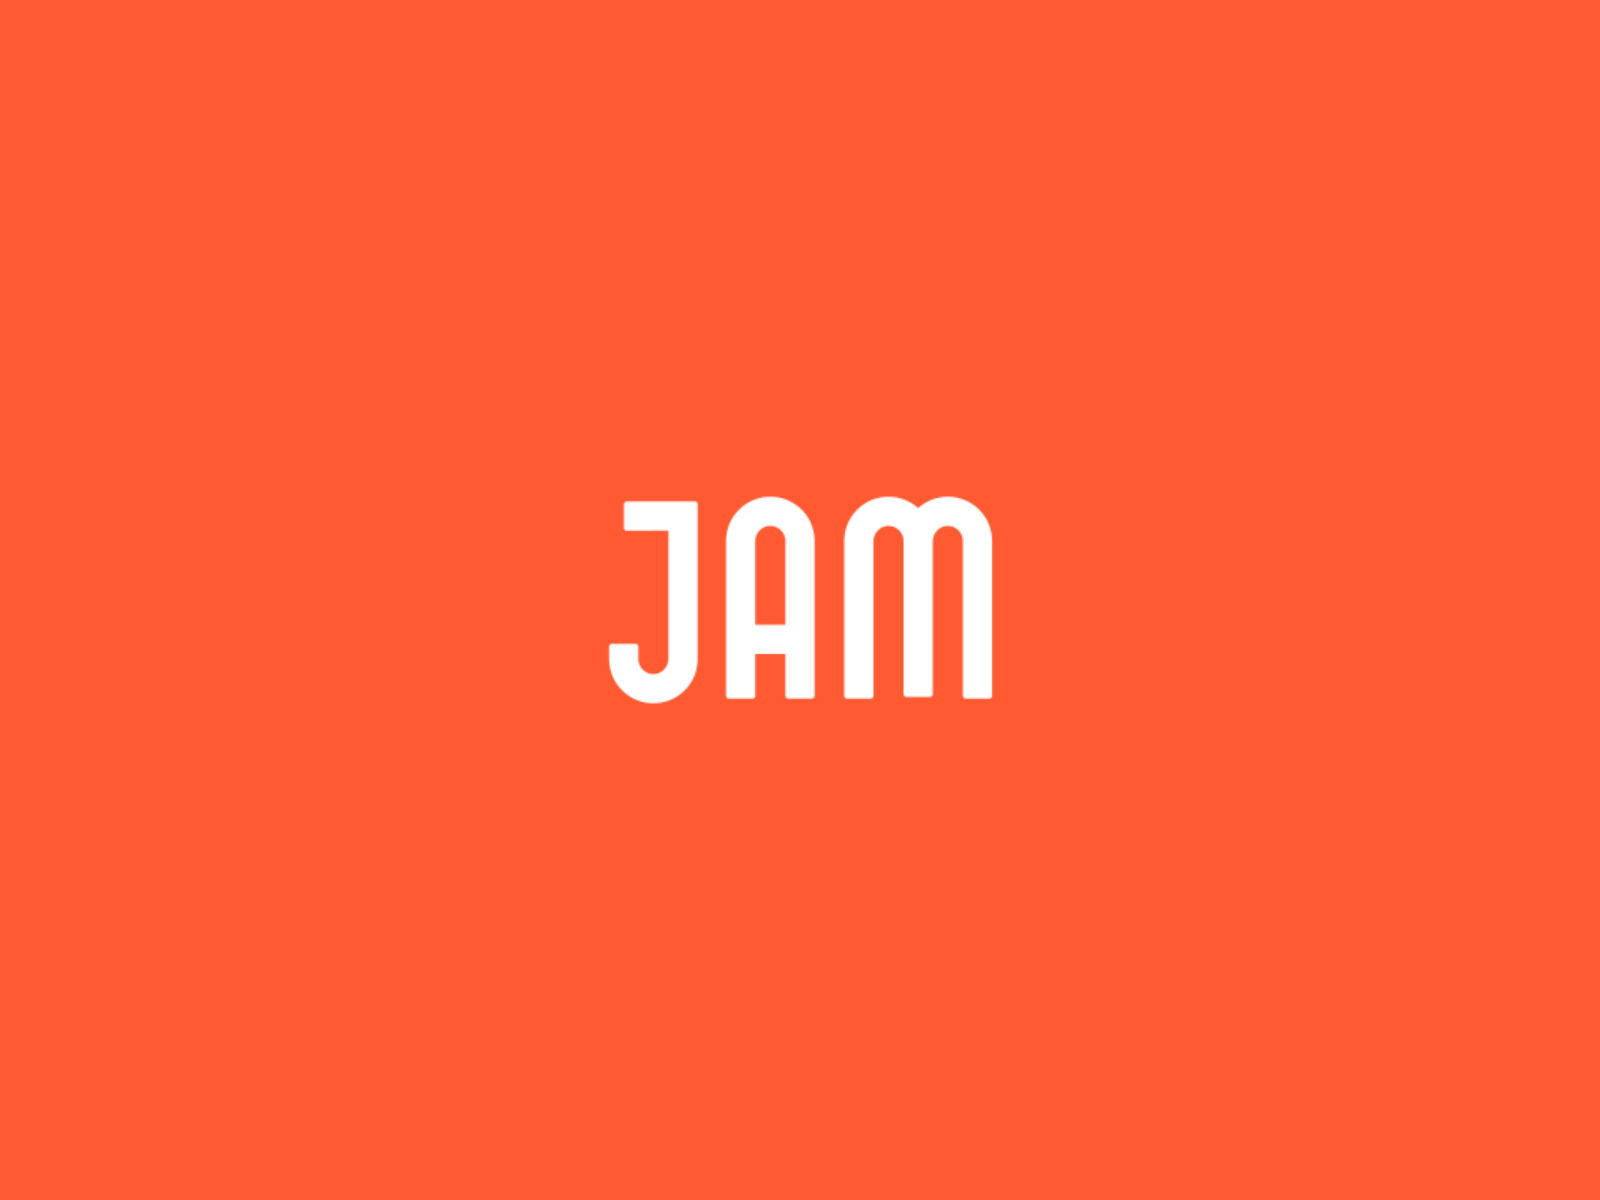 JAM logo animation by Sasha Kozlov on Dribbble